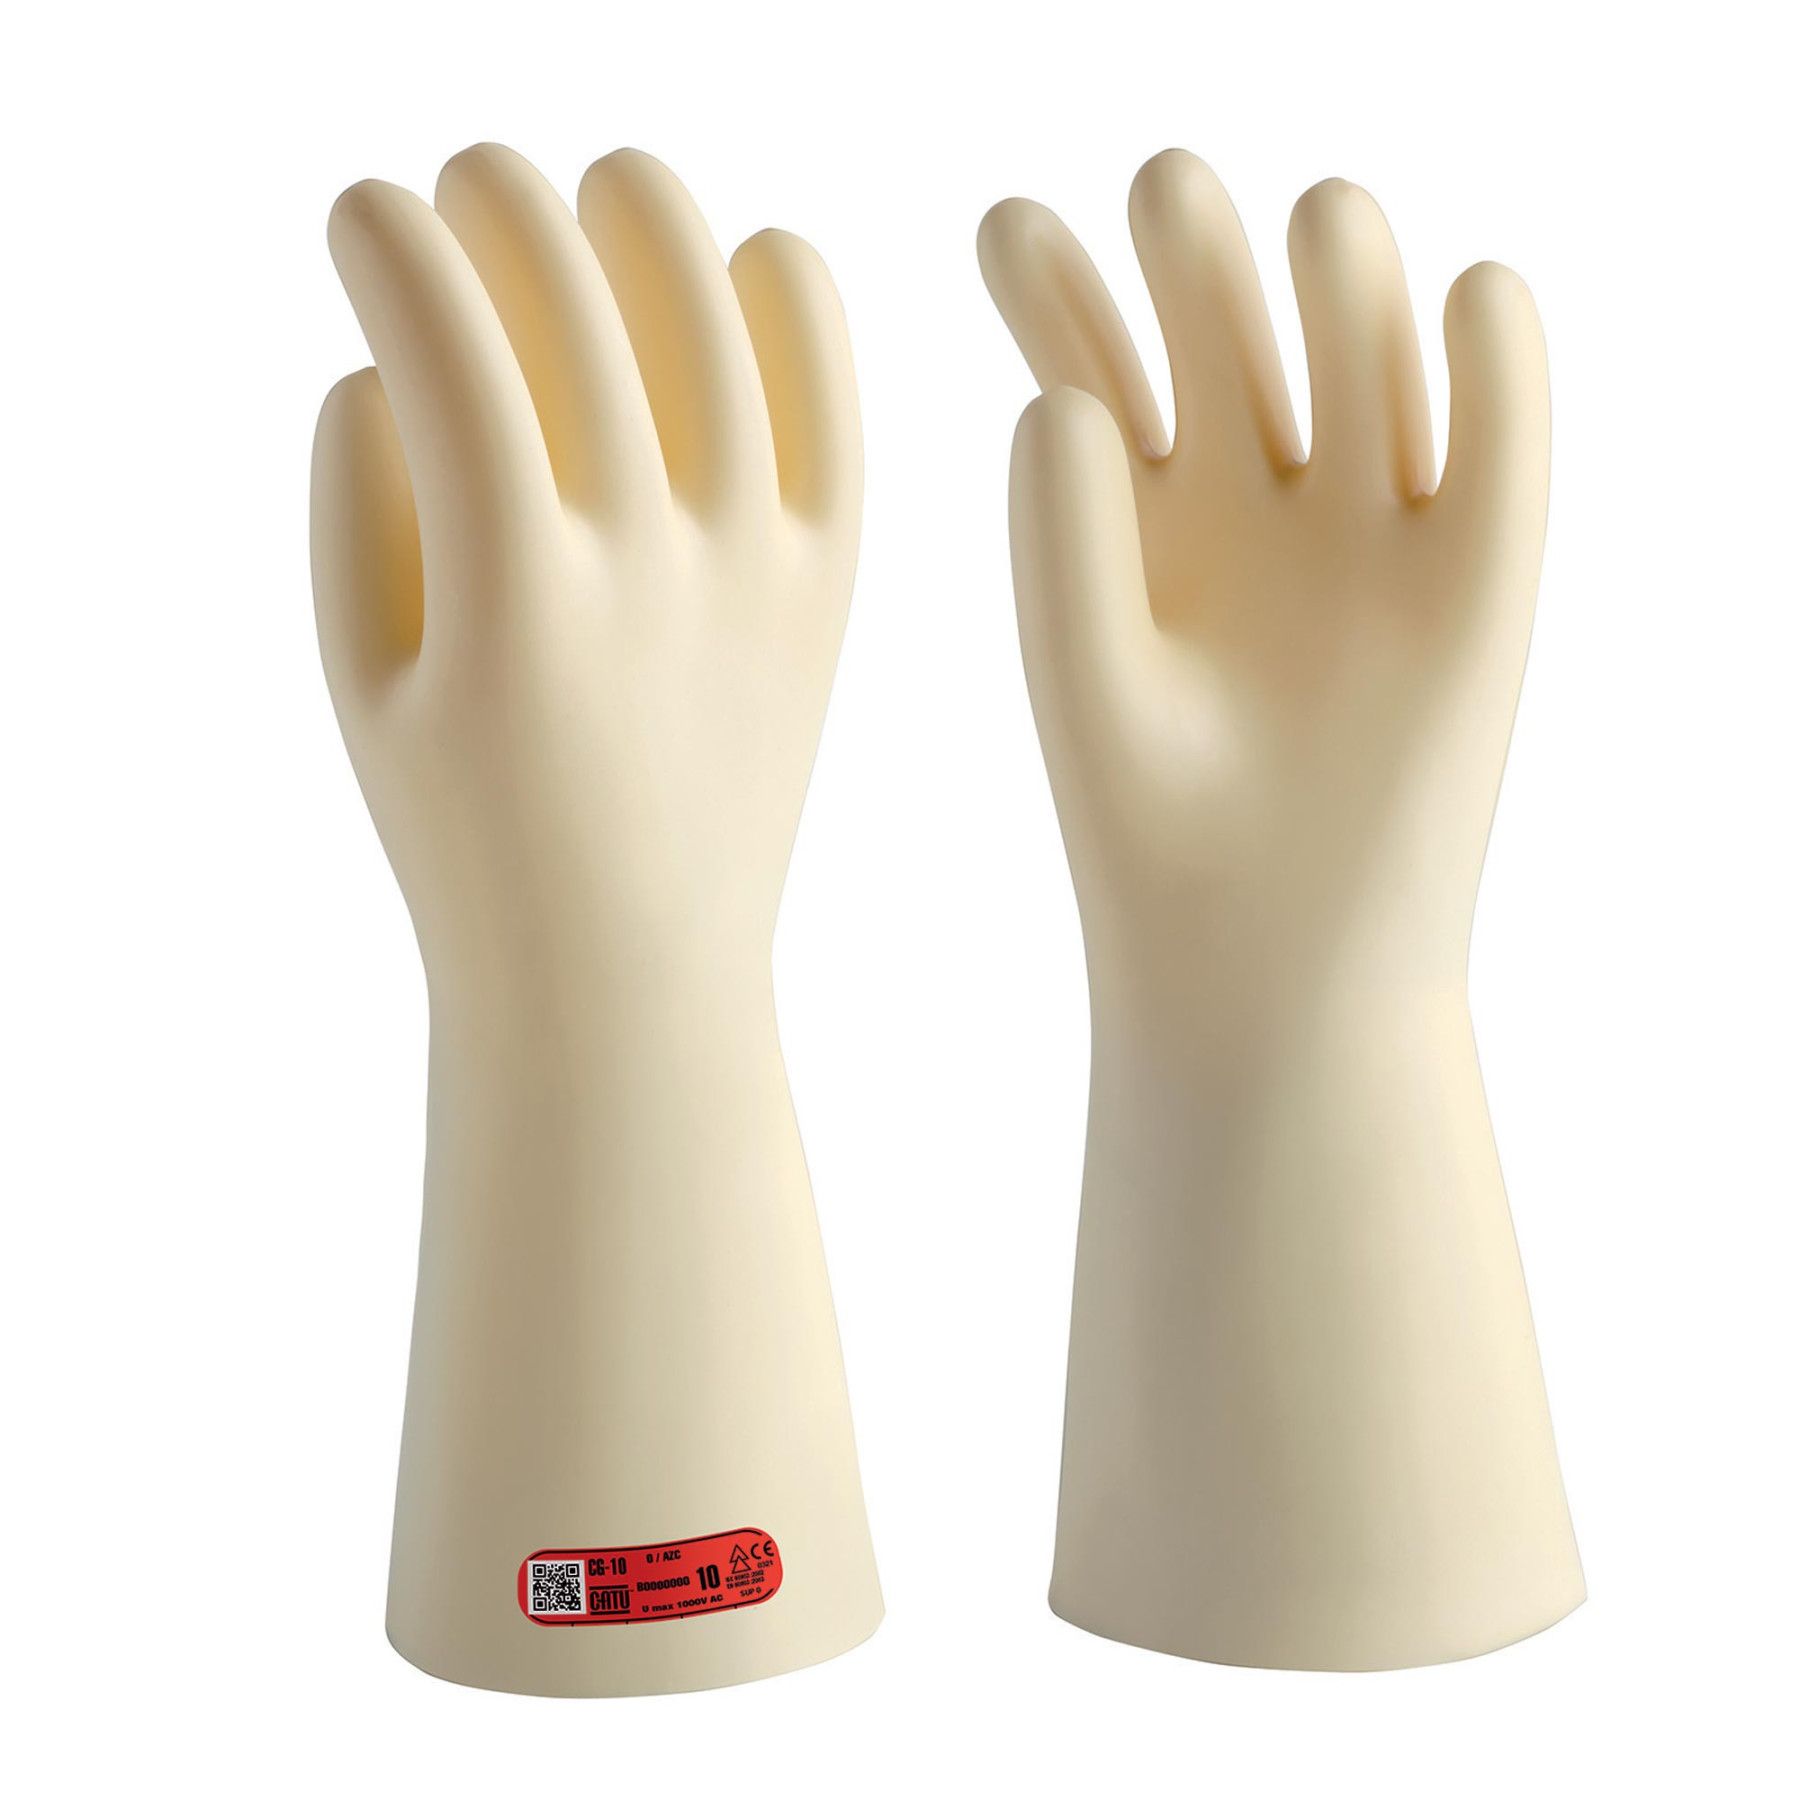 Sous-gants de protection en coton taille unique